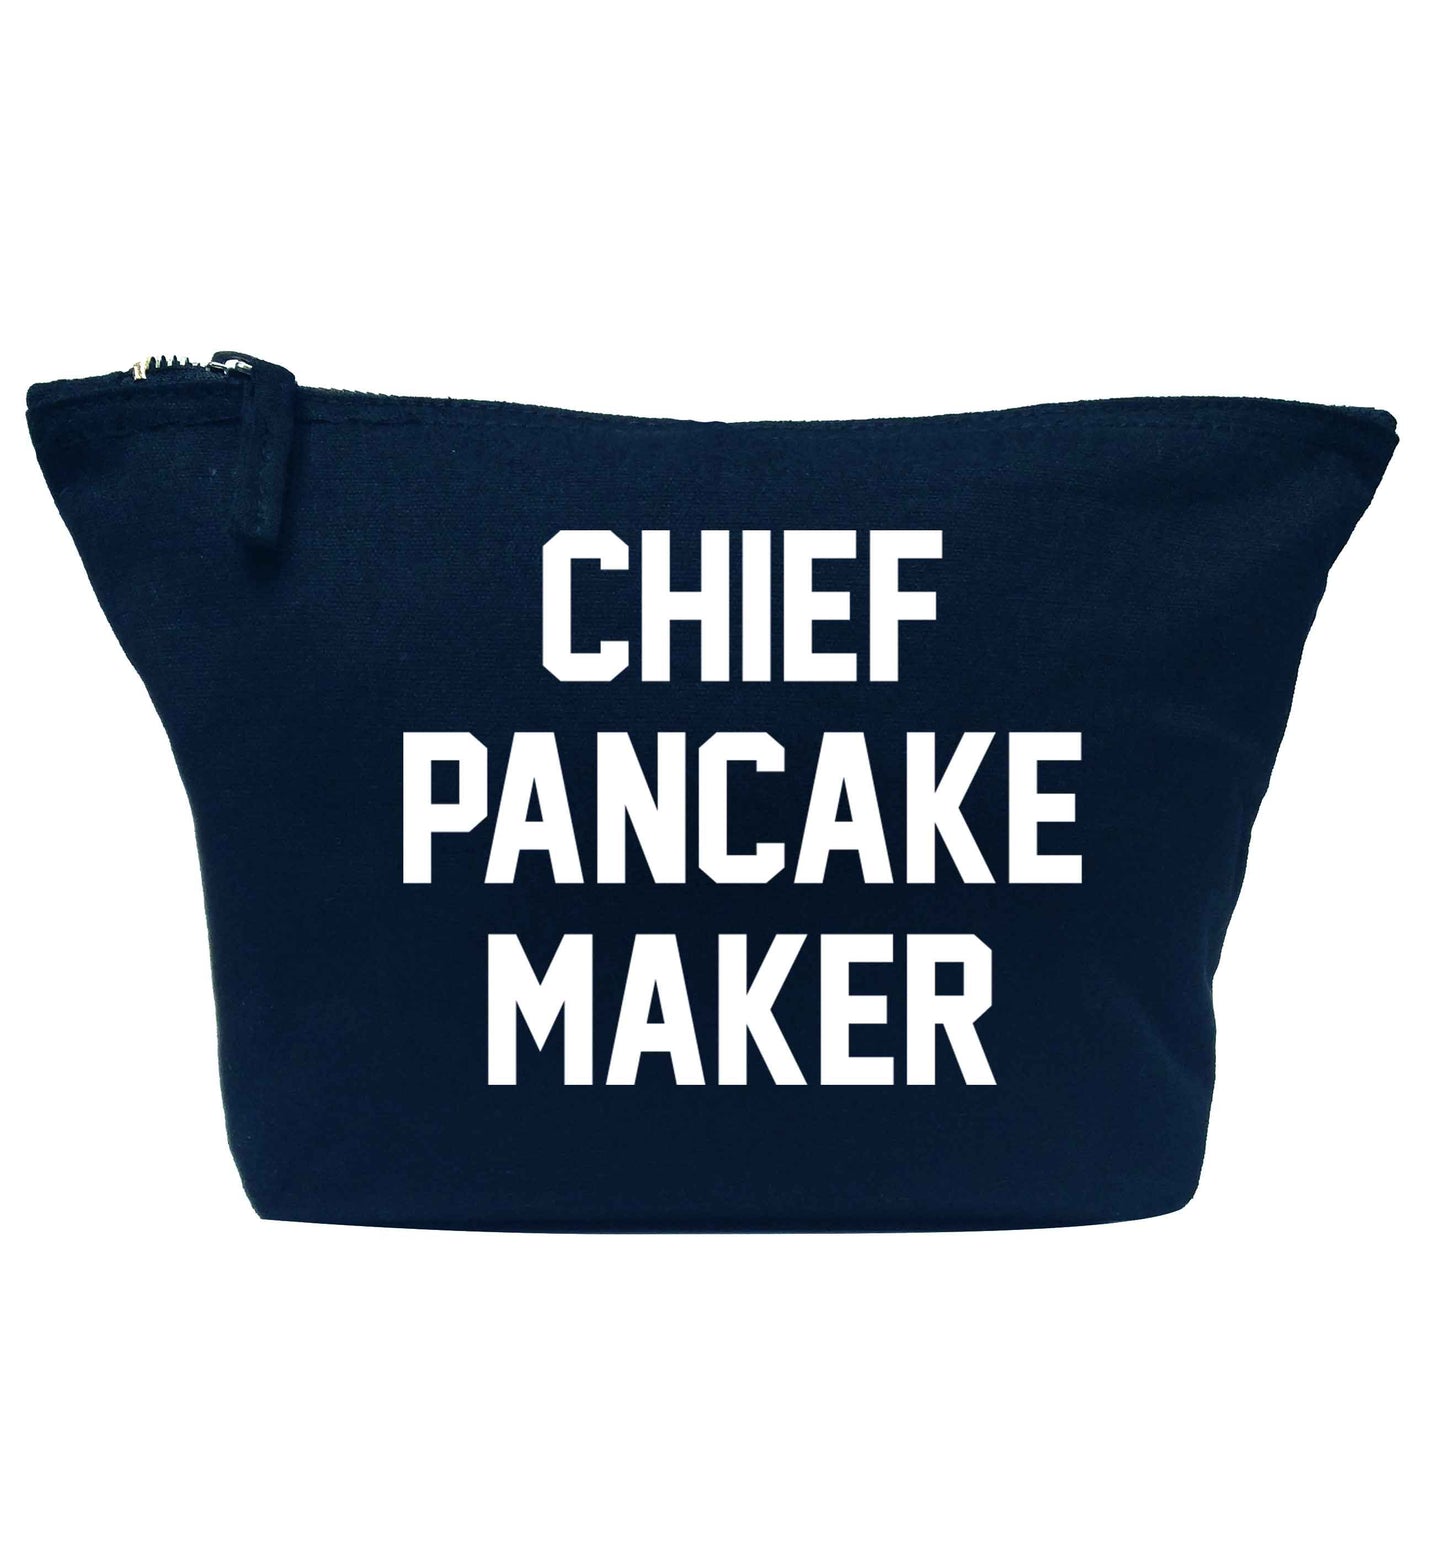 Chief pancake maker navy makeup bag